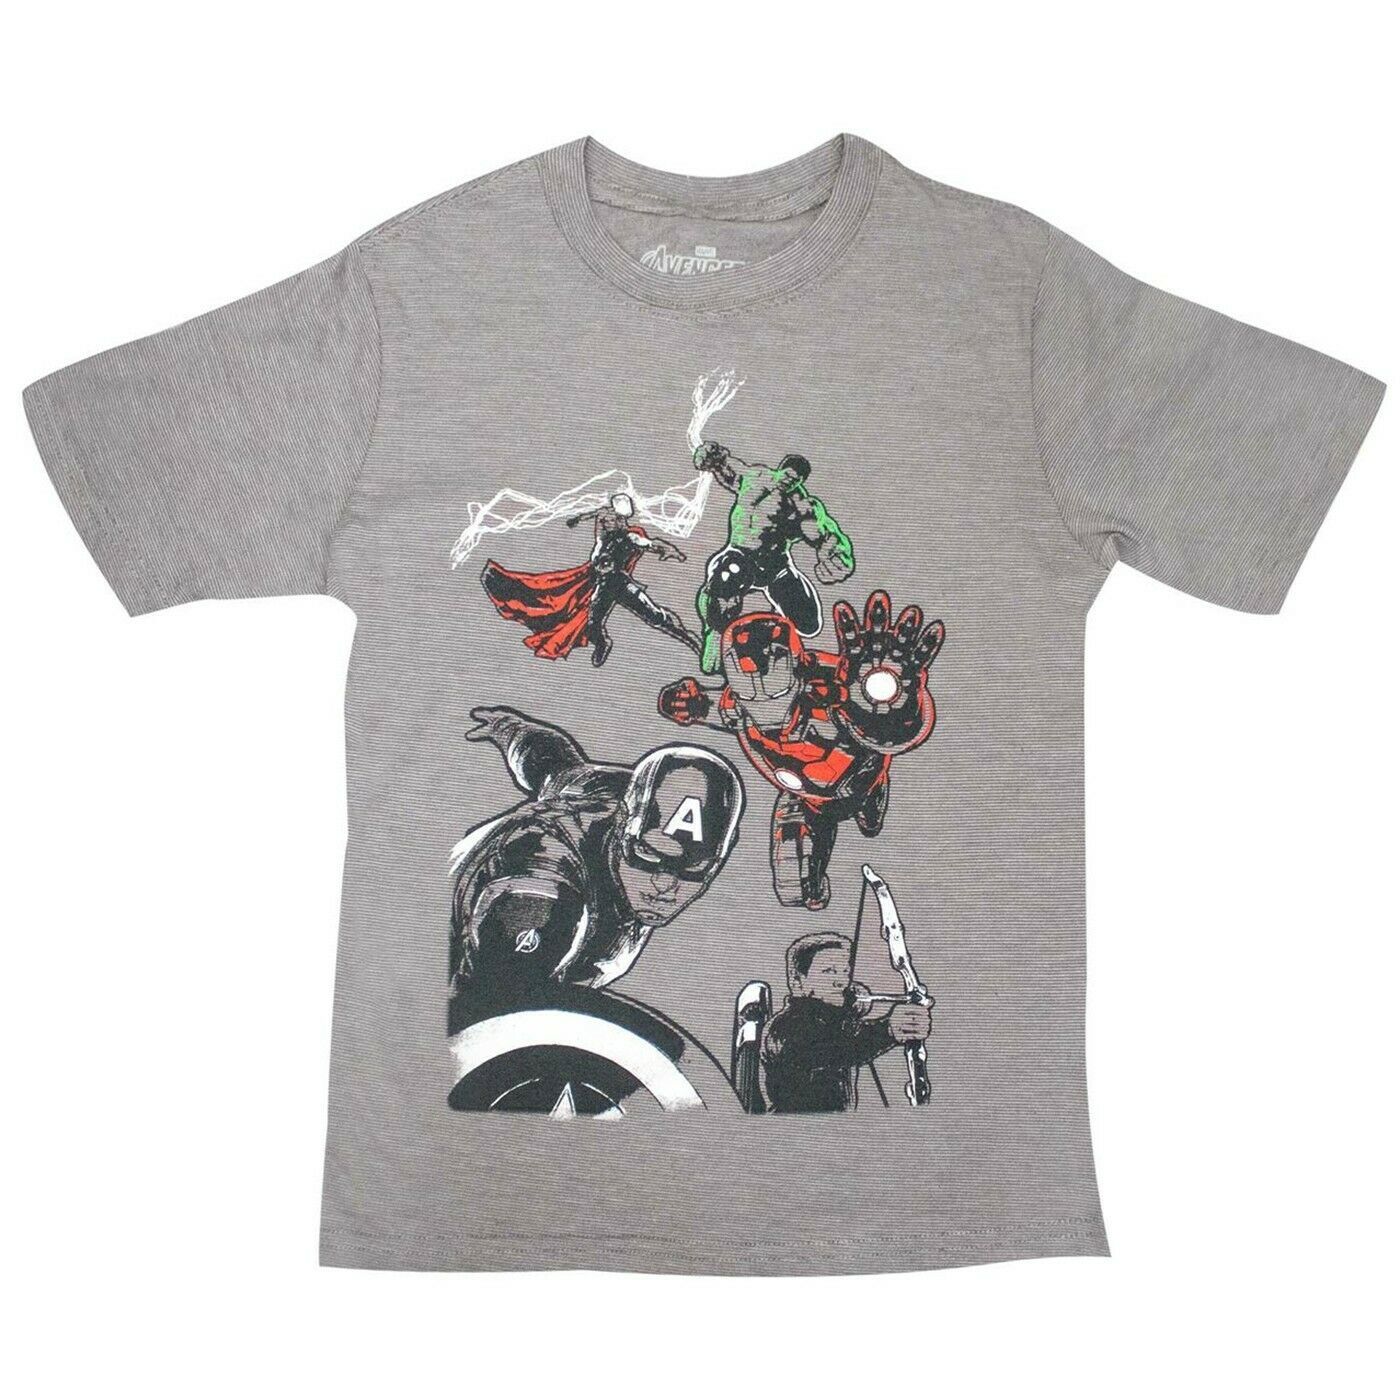 Marvel Avengers Team Graphic Boys Ringer T-shirt  - $19.98